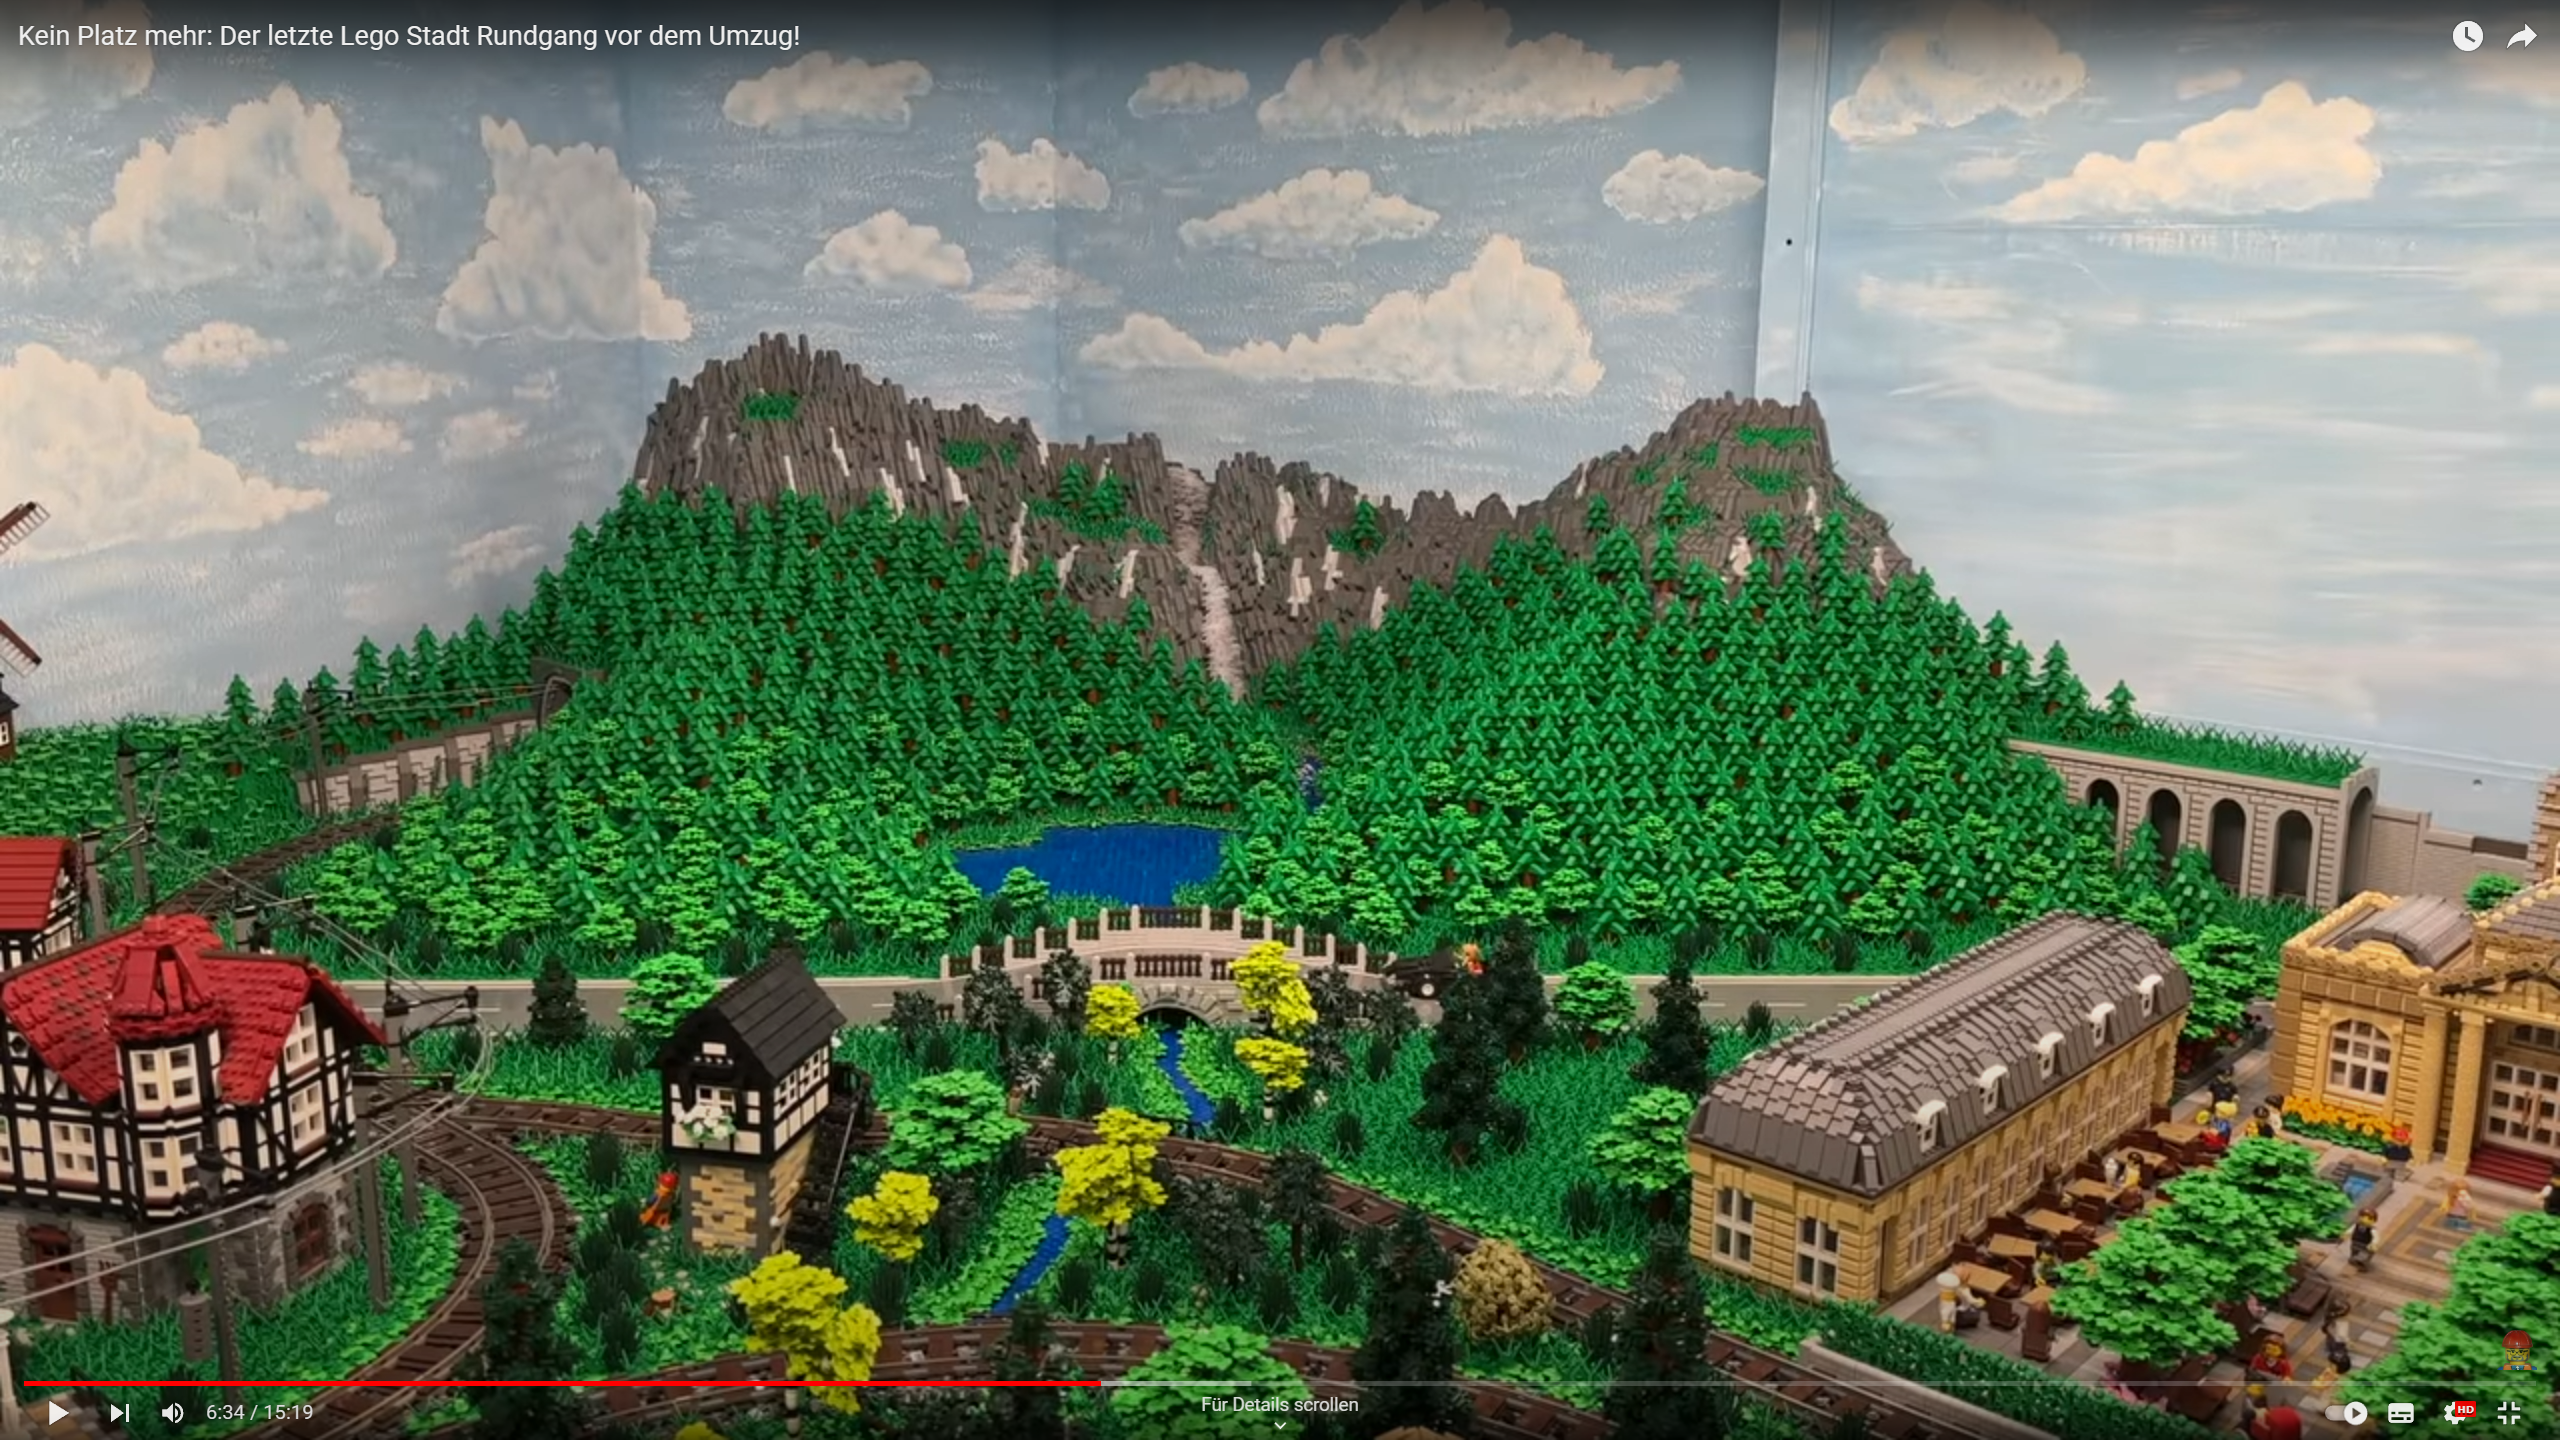 Kein Platz mehr: Der letzte Lego Stadt Rundgang vor dem Umzug!